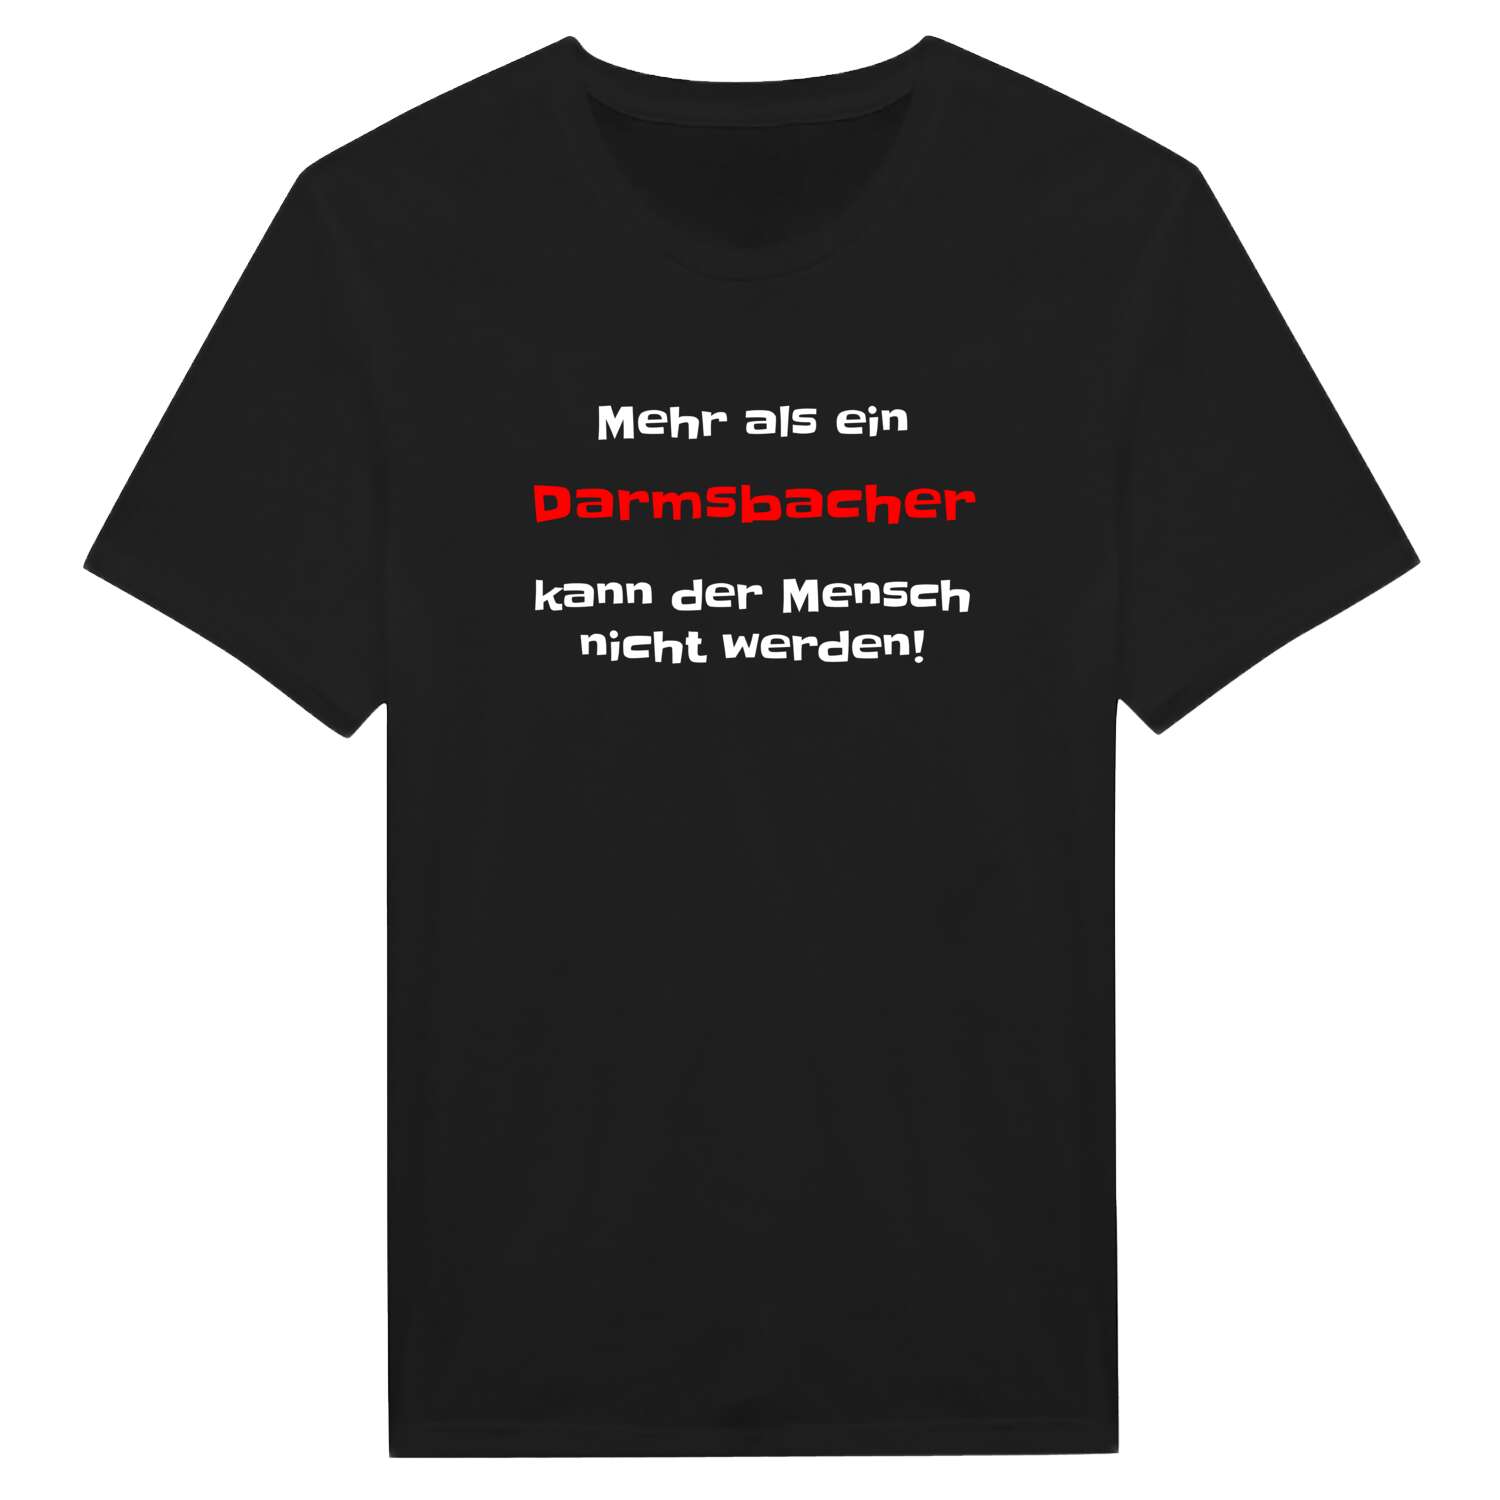 Darmsbach T-Shirt »Mehr als ein«